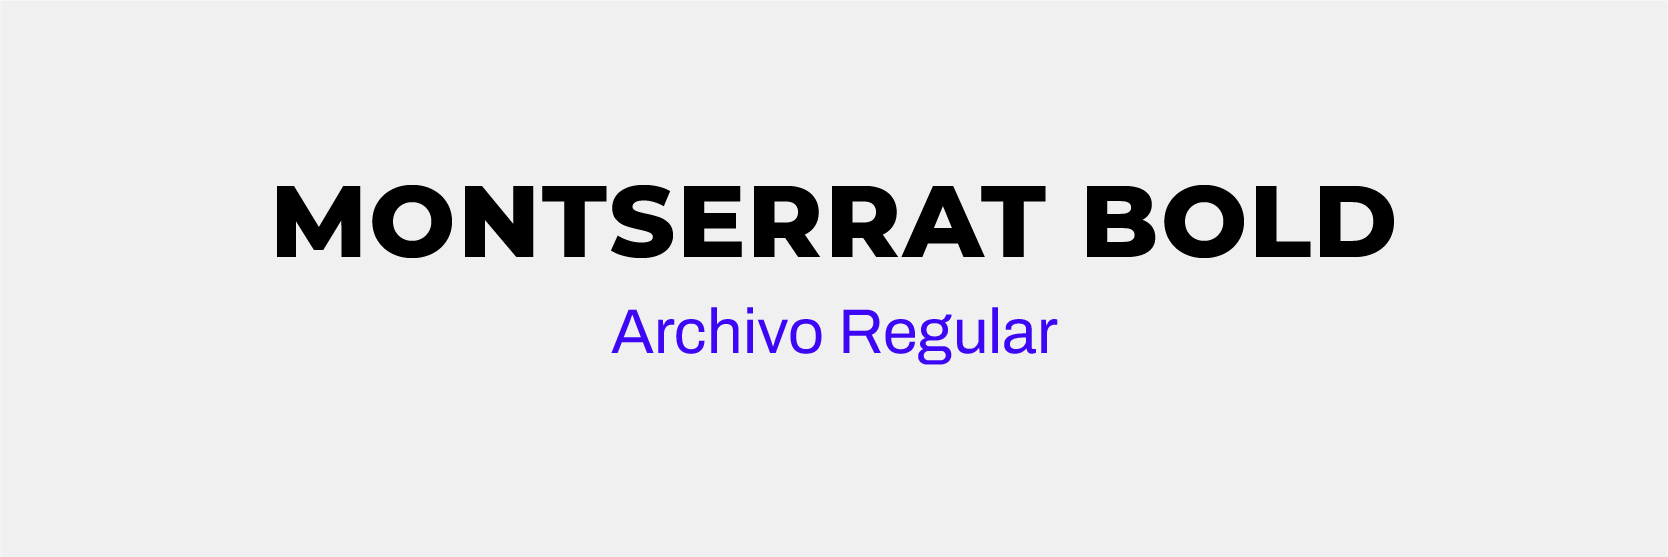 Tipografía Montserrat Bold y Archivo Regular